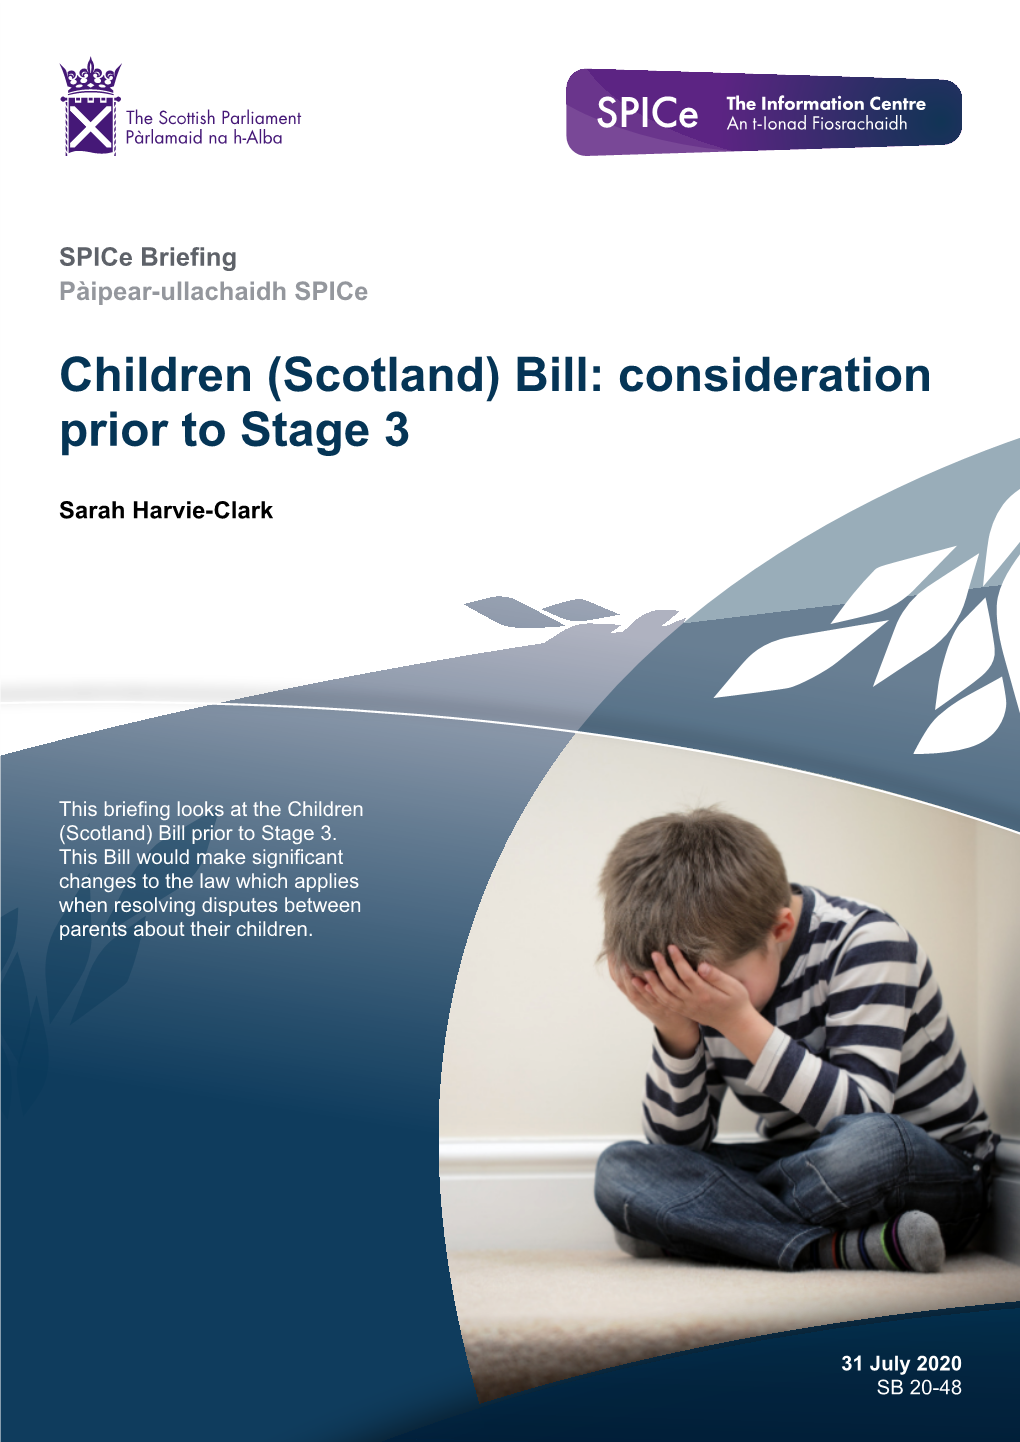 Children (Scotland) Bill: Consideration Prior to Stage 3